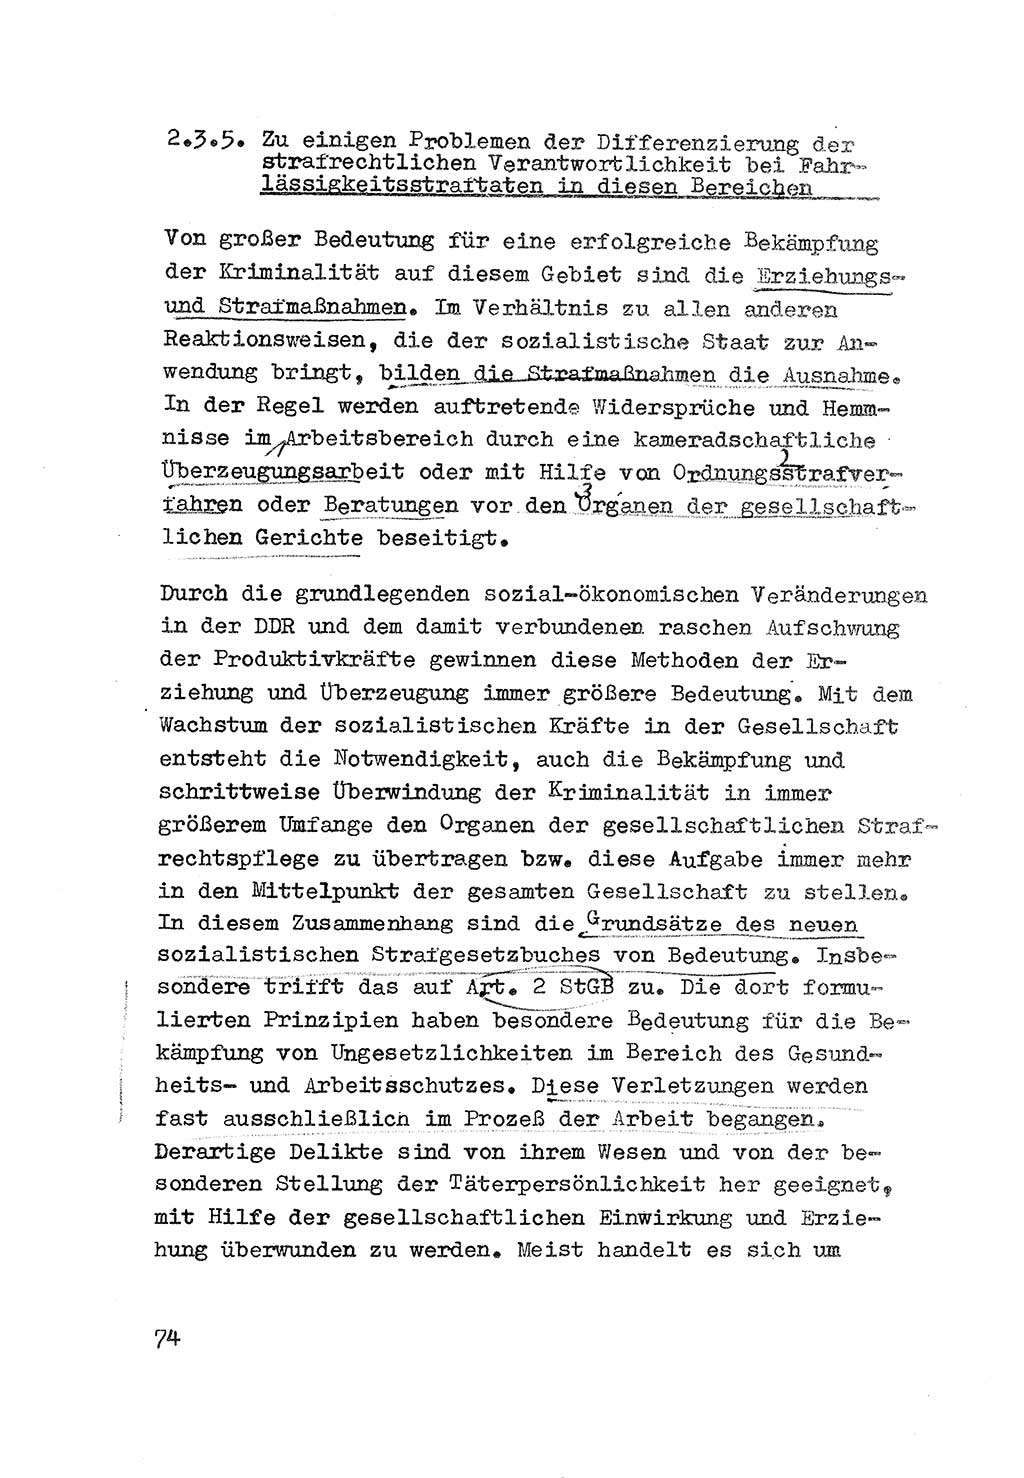 Strafrecht der DDR (Deutsche Demokratische Republik), Besonderer Teil, Lehrmaterial, Heft 3 1969, Seite 74 (Strafr. DDR BT Lehrmat. H. 3 1969, S. 74)